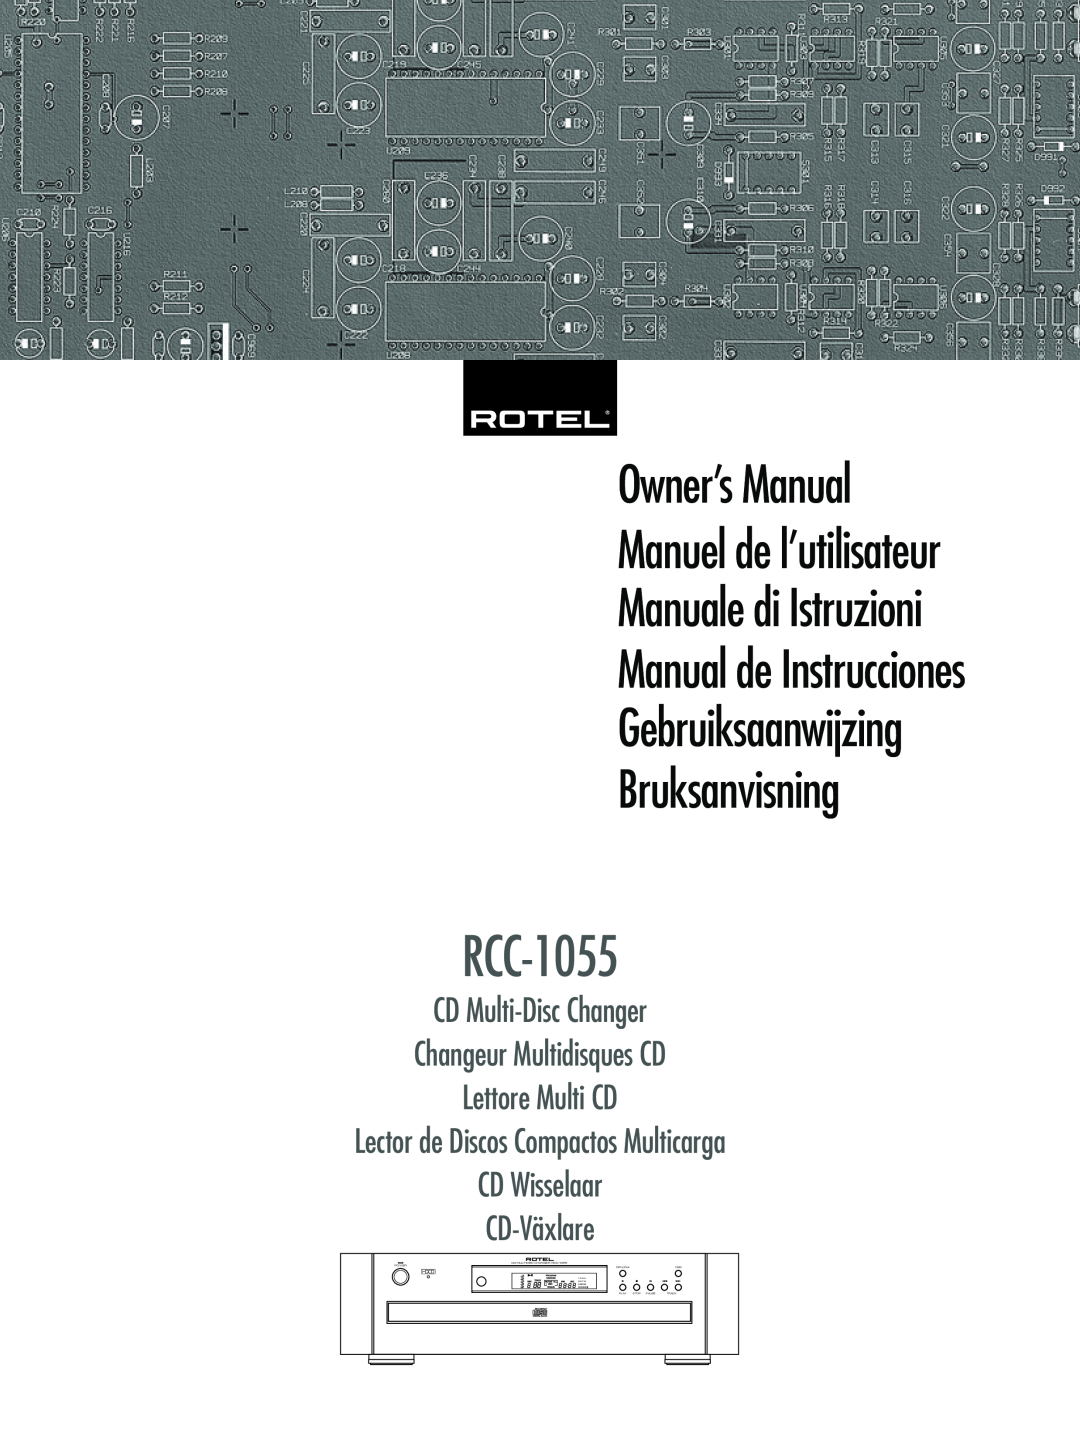 Rotel RCC-1055 owner manual OwnerÕs Manual, Manuale di Istruzioni Manual de Instrucciones, Manuel de lÕutilisateur, Play 